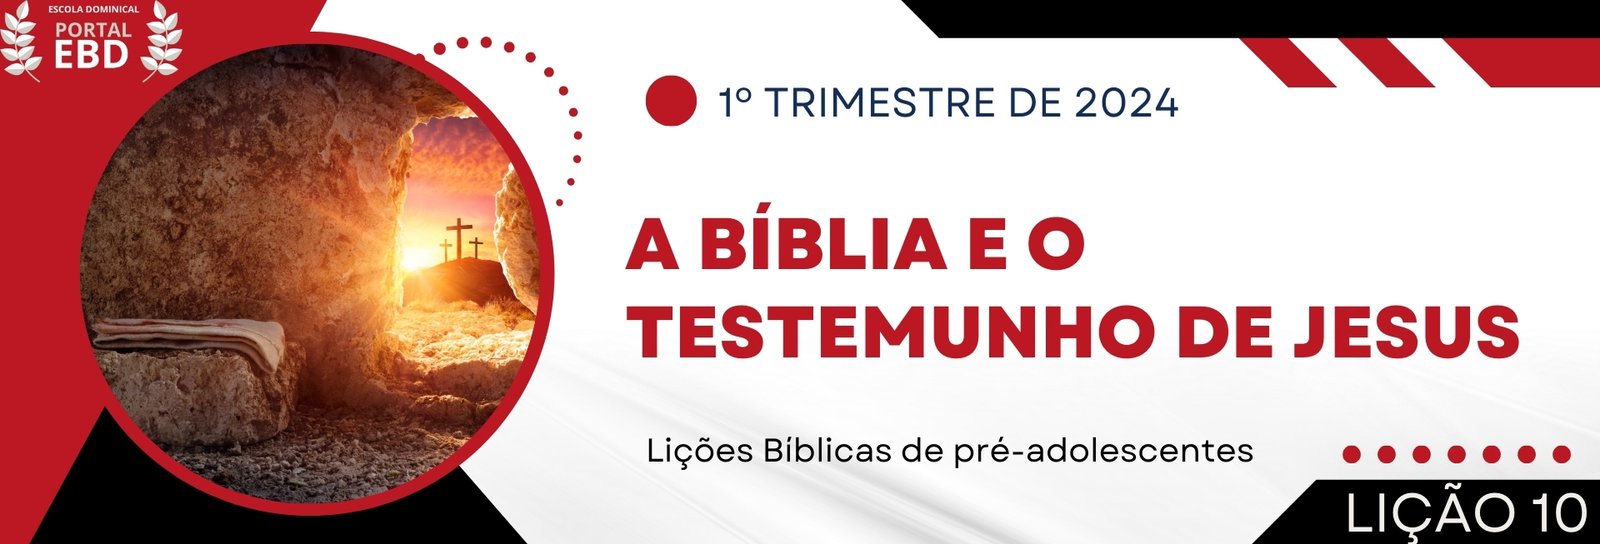 Lição 10 - A Bíblia e o testemunho de Jesus - VIDEOAULAS